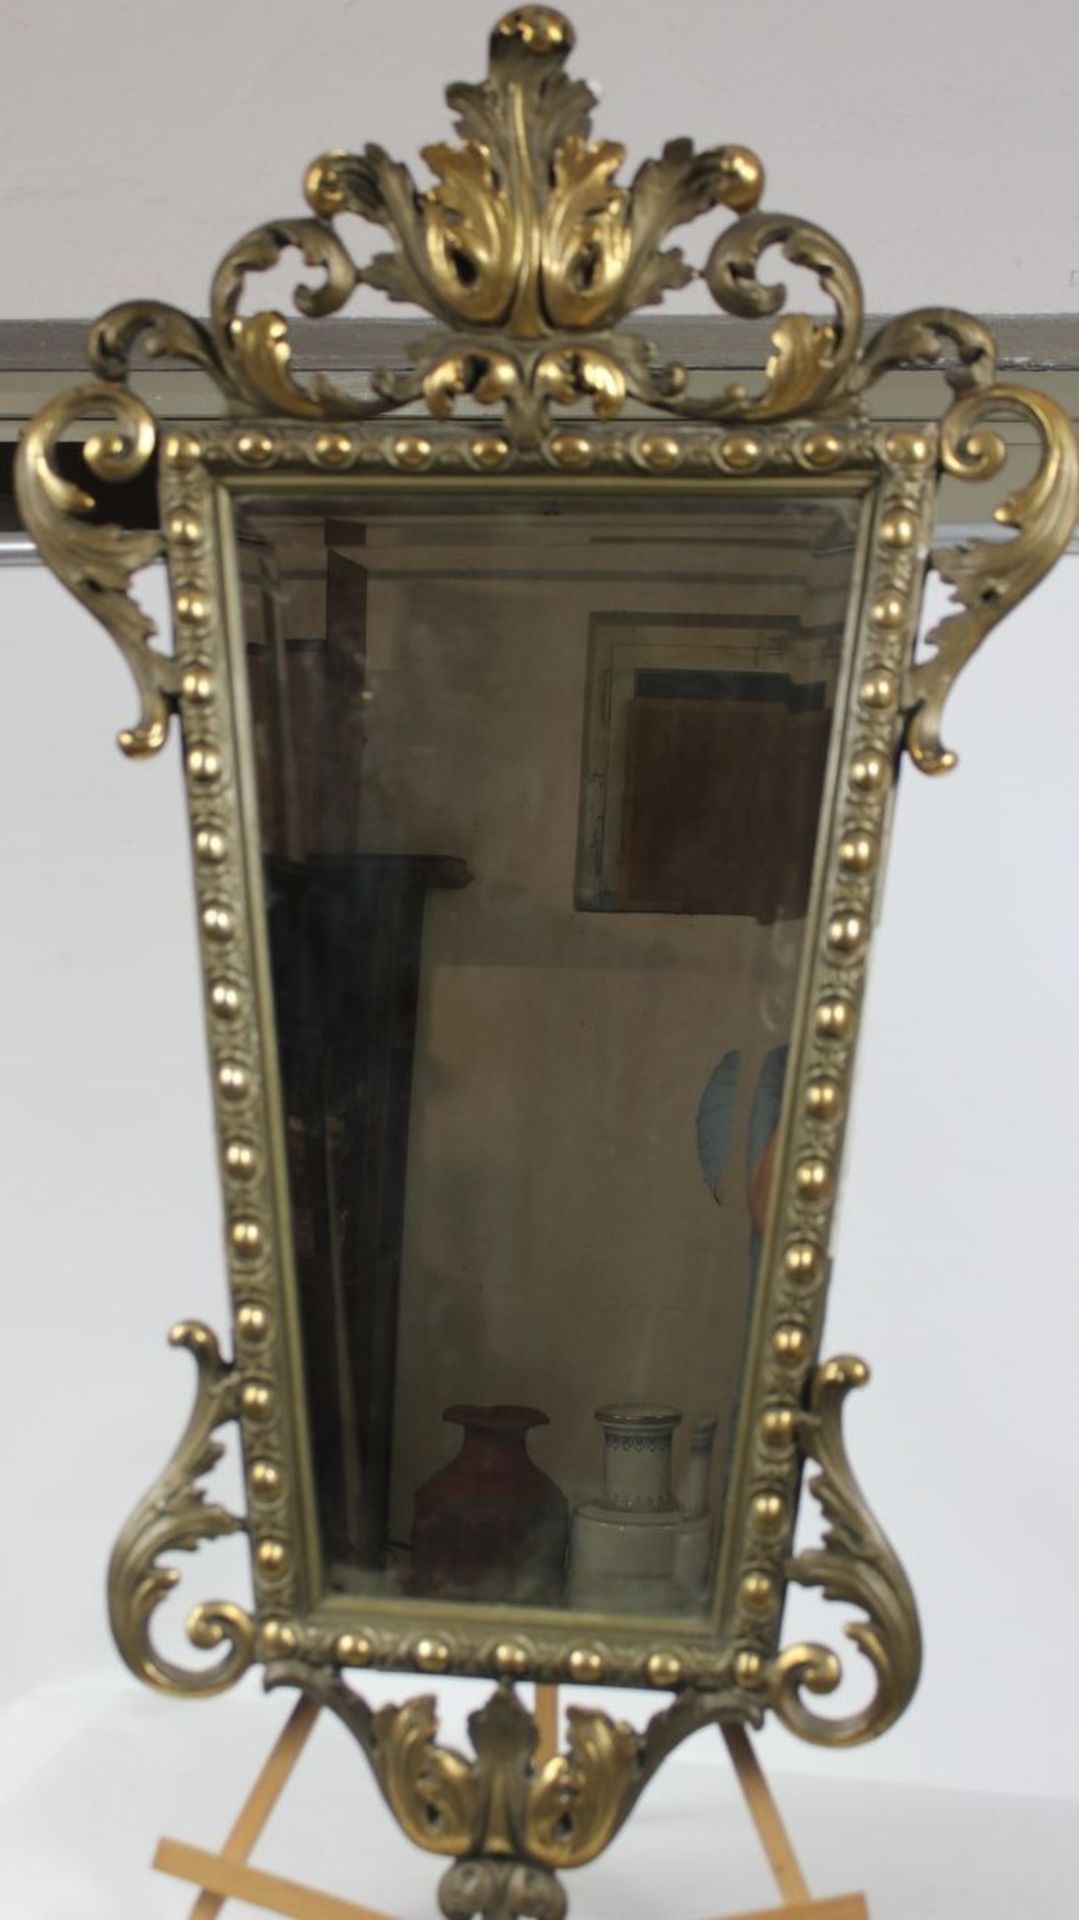 Spiegel im Barocken Stil um 1900